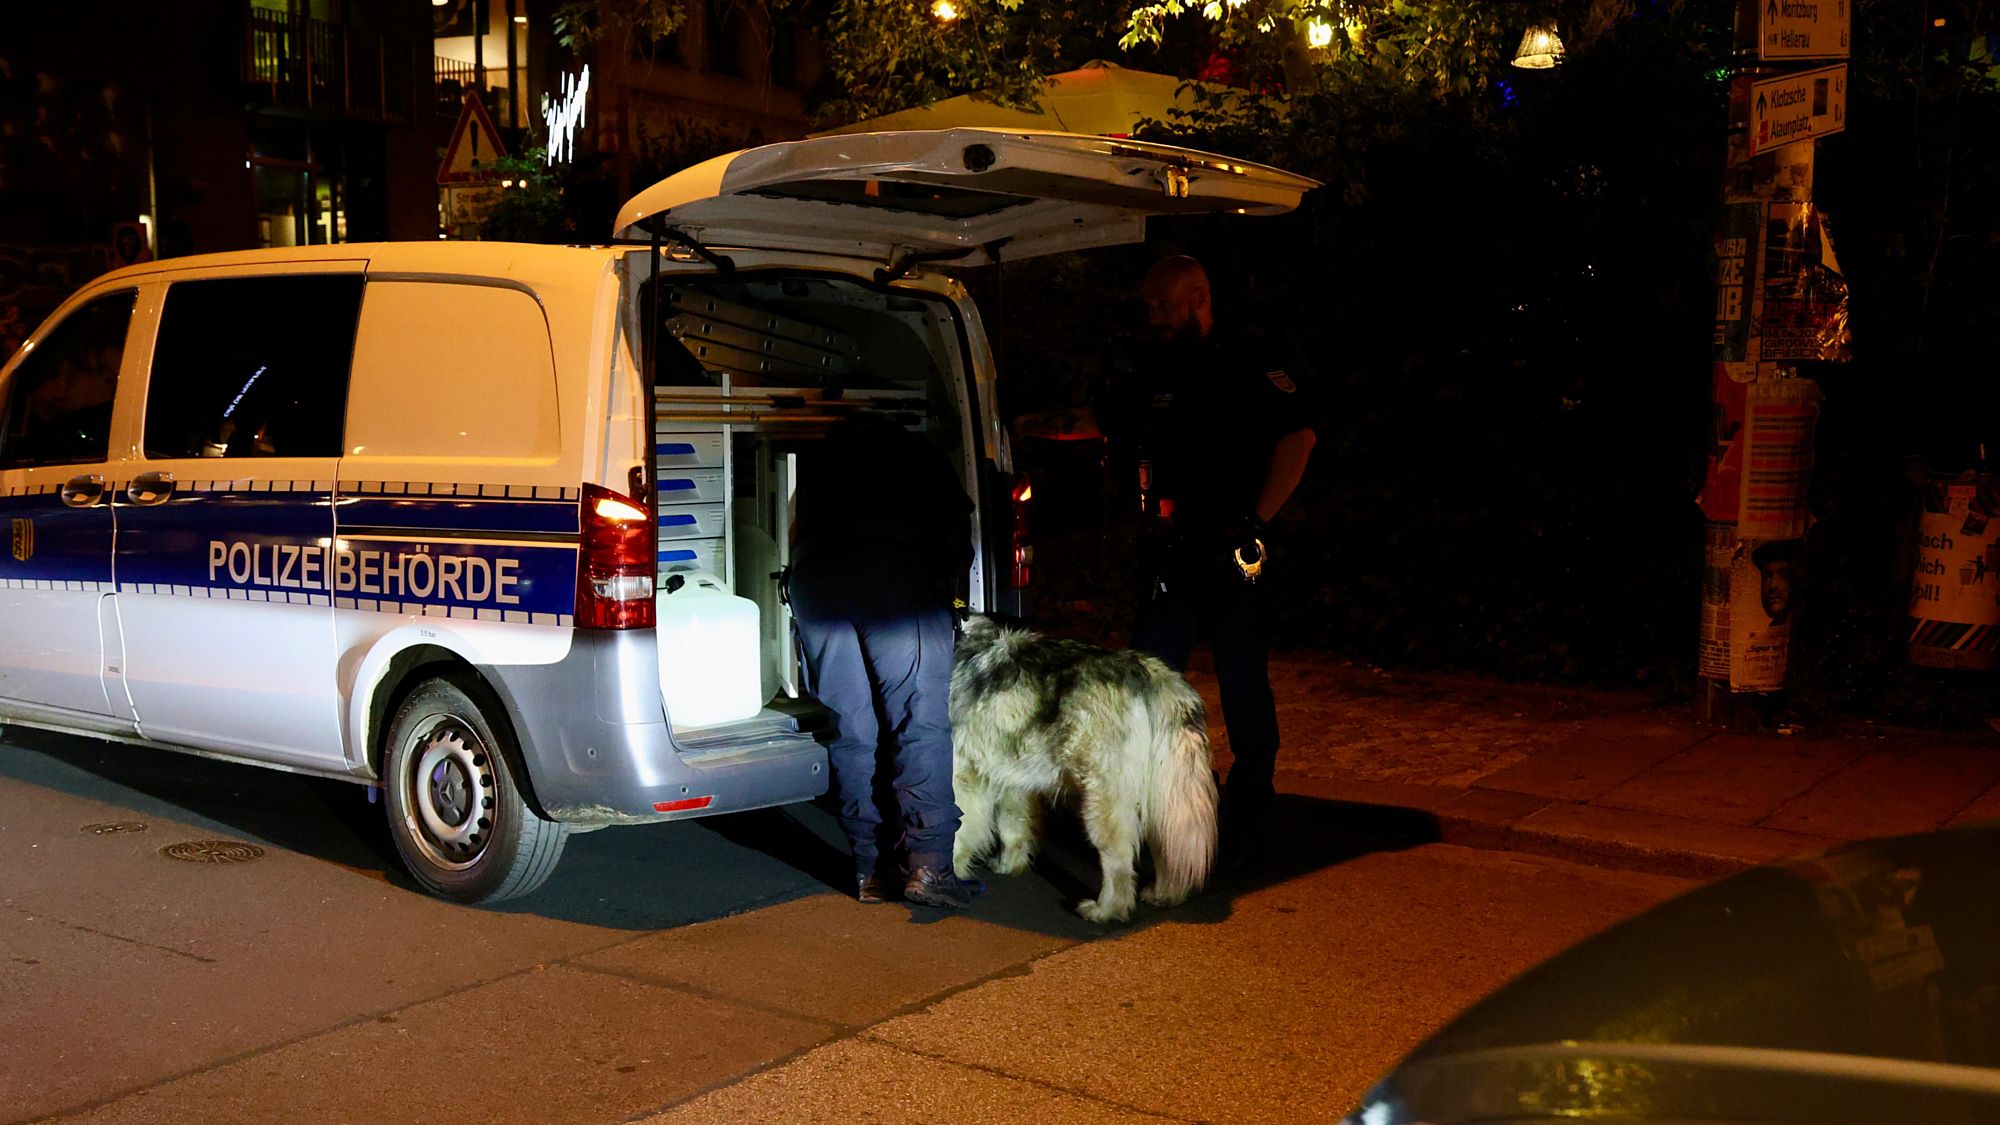 Die Polizeibehörde nahm den Hund schließlich mit. Foto: Florian Varga